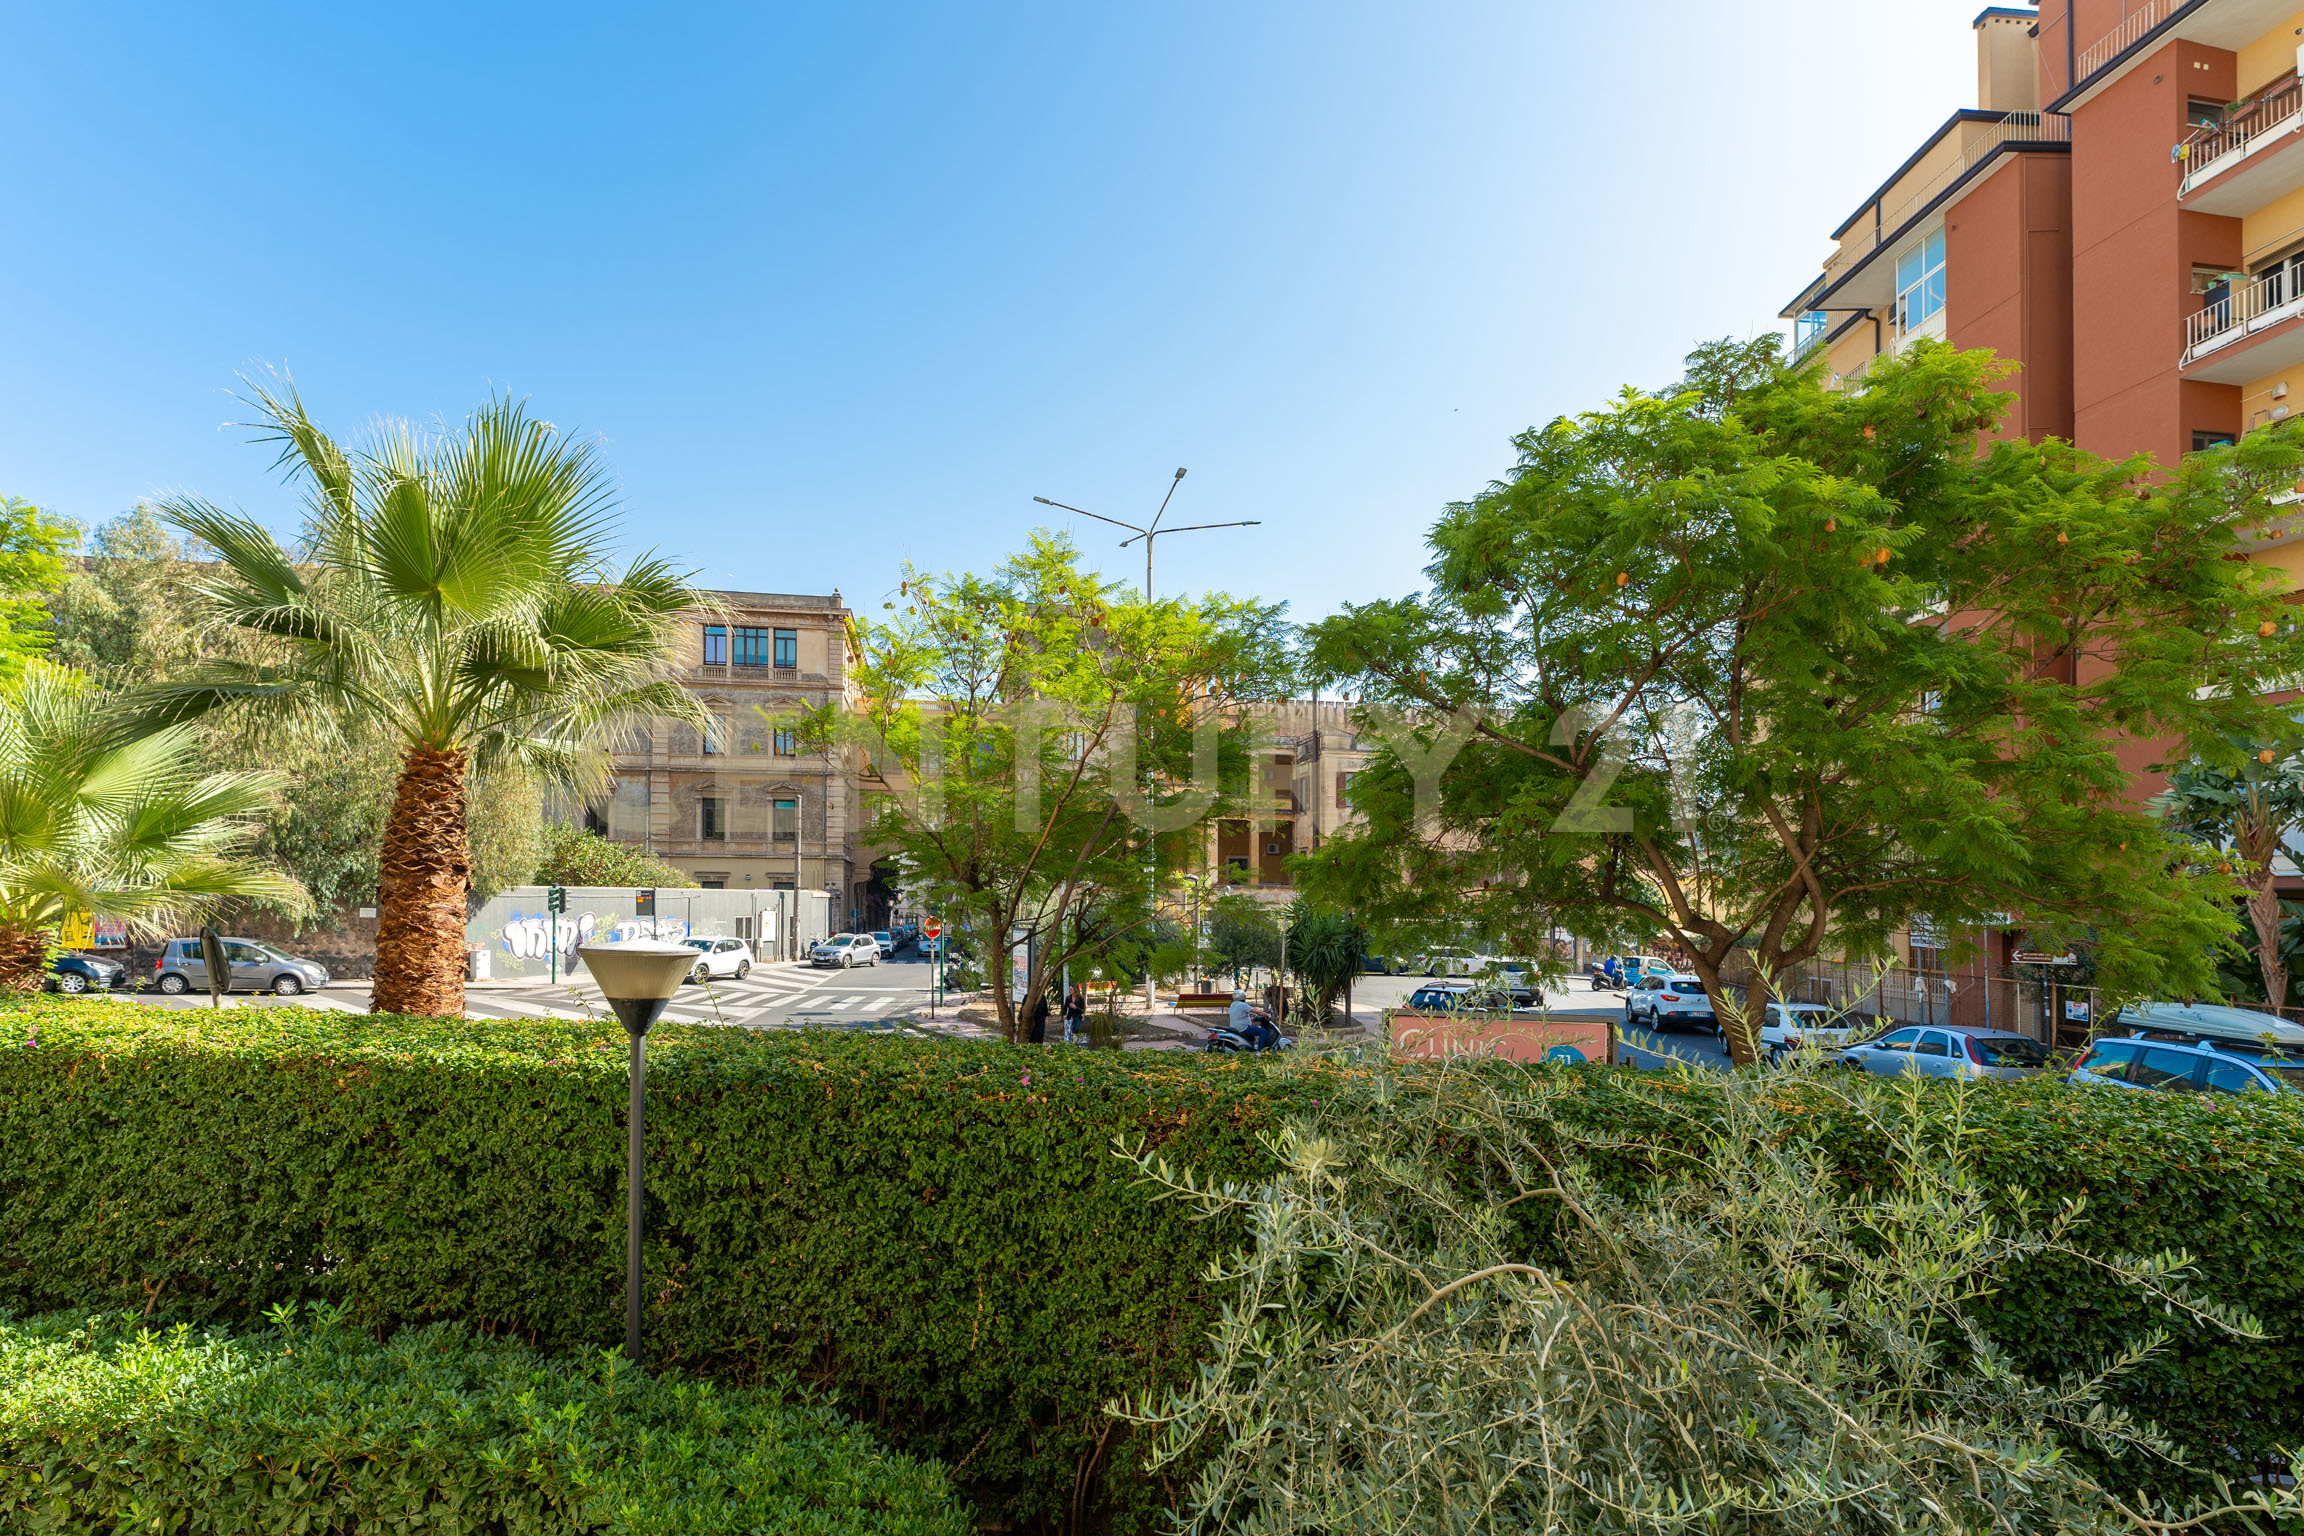 Appartamento con giardino in piazza del beato angelico 2, Catania